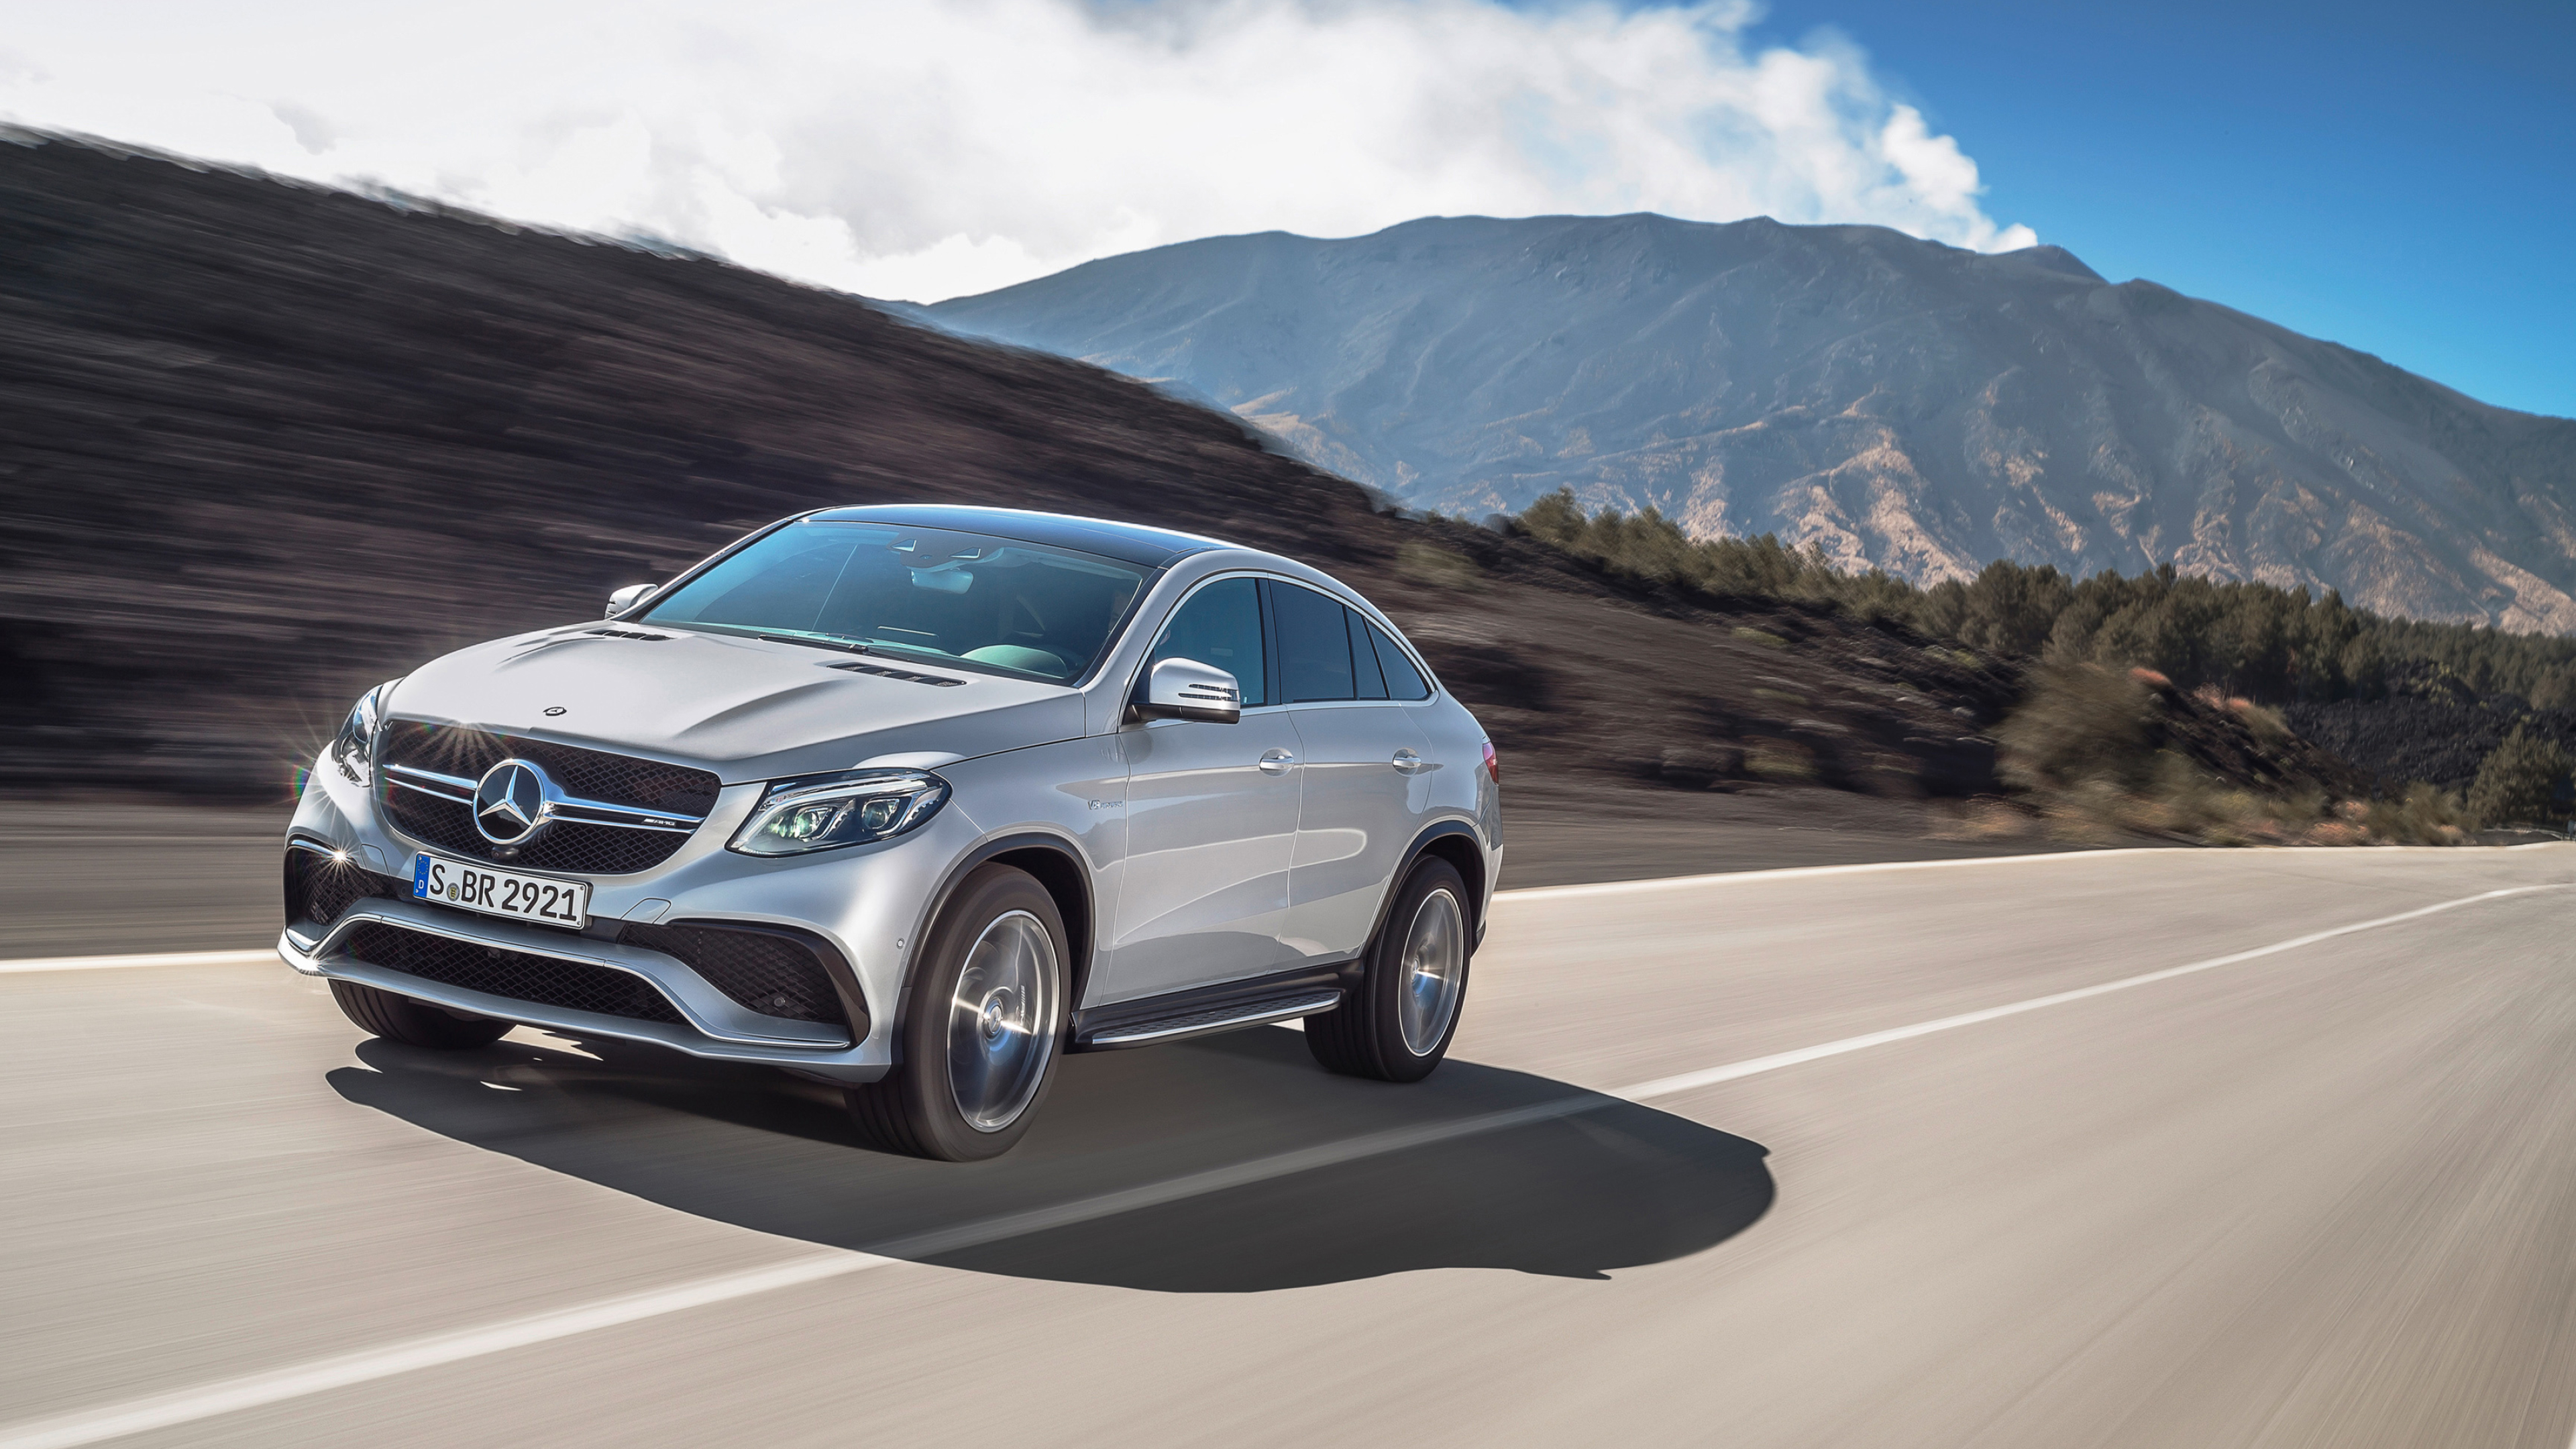 Mercedes-Benz GLE Class Coupe, Cars desktop wallpapers, 4k Ultra HD, 3840x2160 4K Desktop